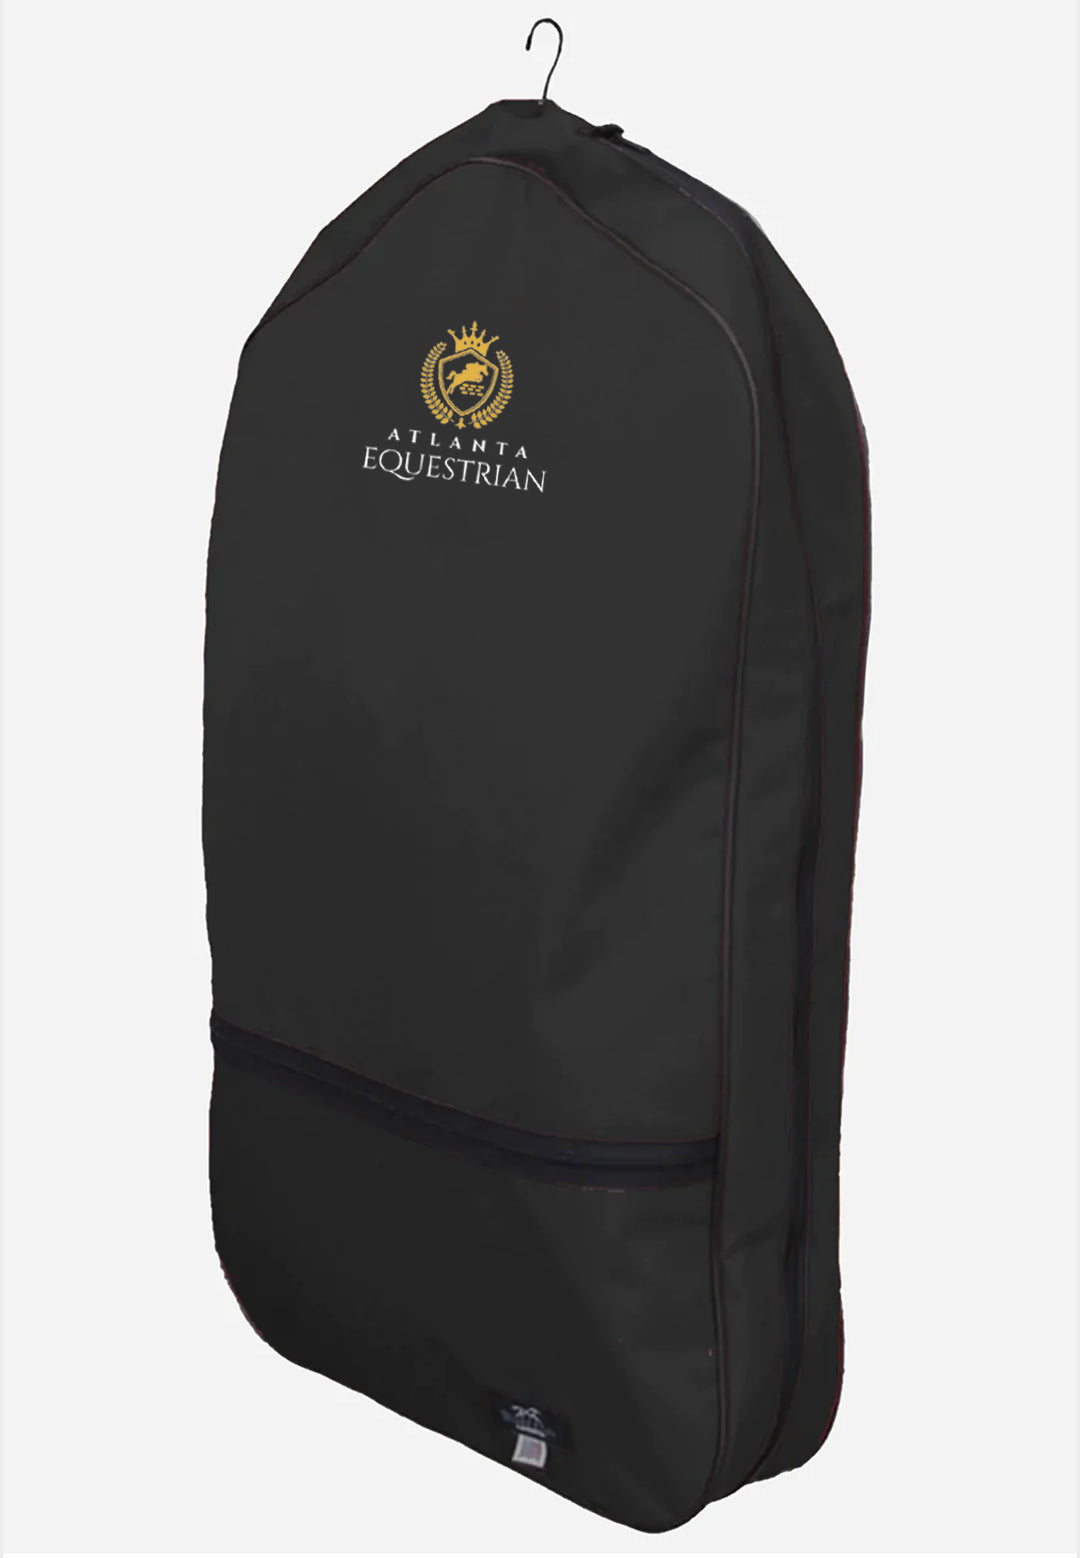 Atlanta Equestrian World Class Equine Black Garment Bag - Original and XL